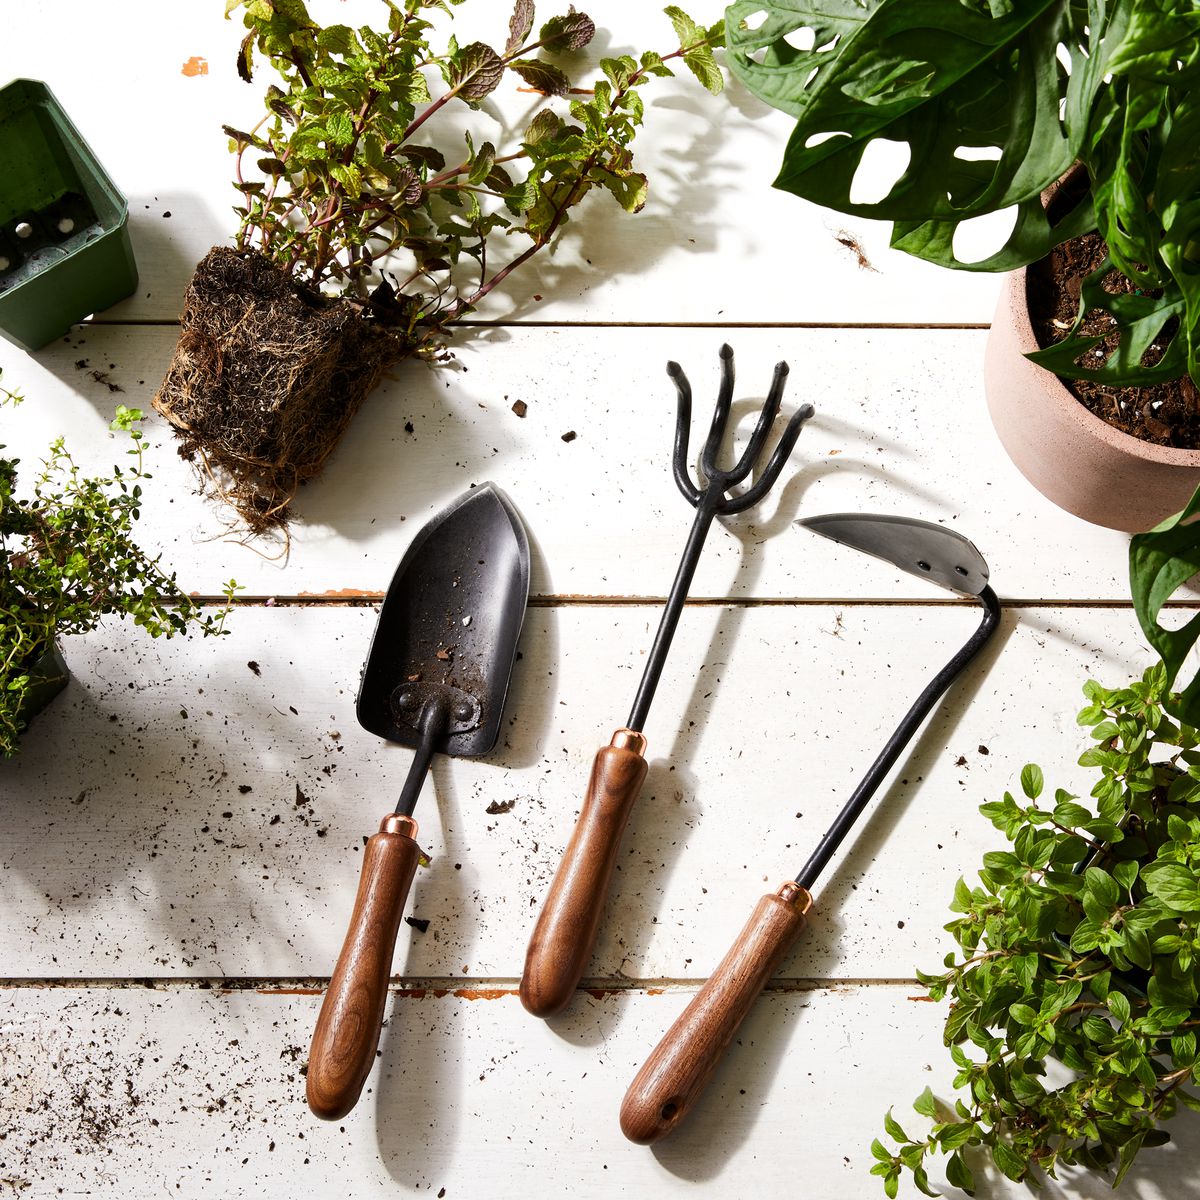 Garden Hand Tools Heavy Duty Garden Tool Set with Handle Gardening Supply 